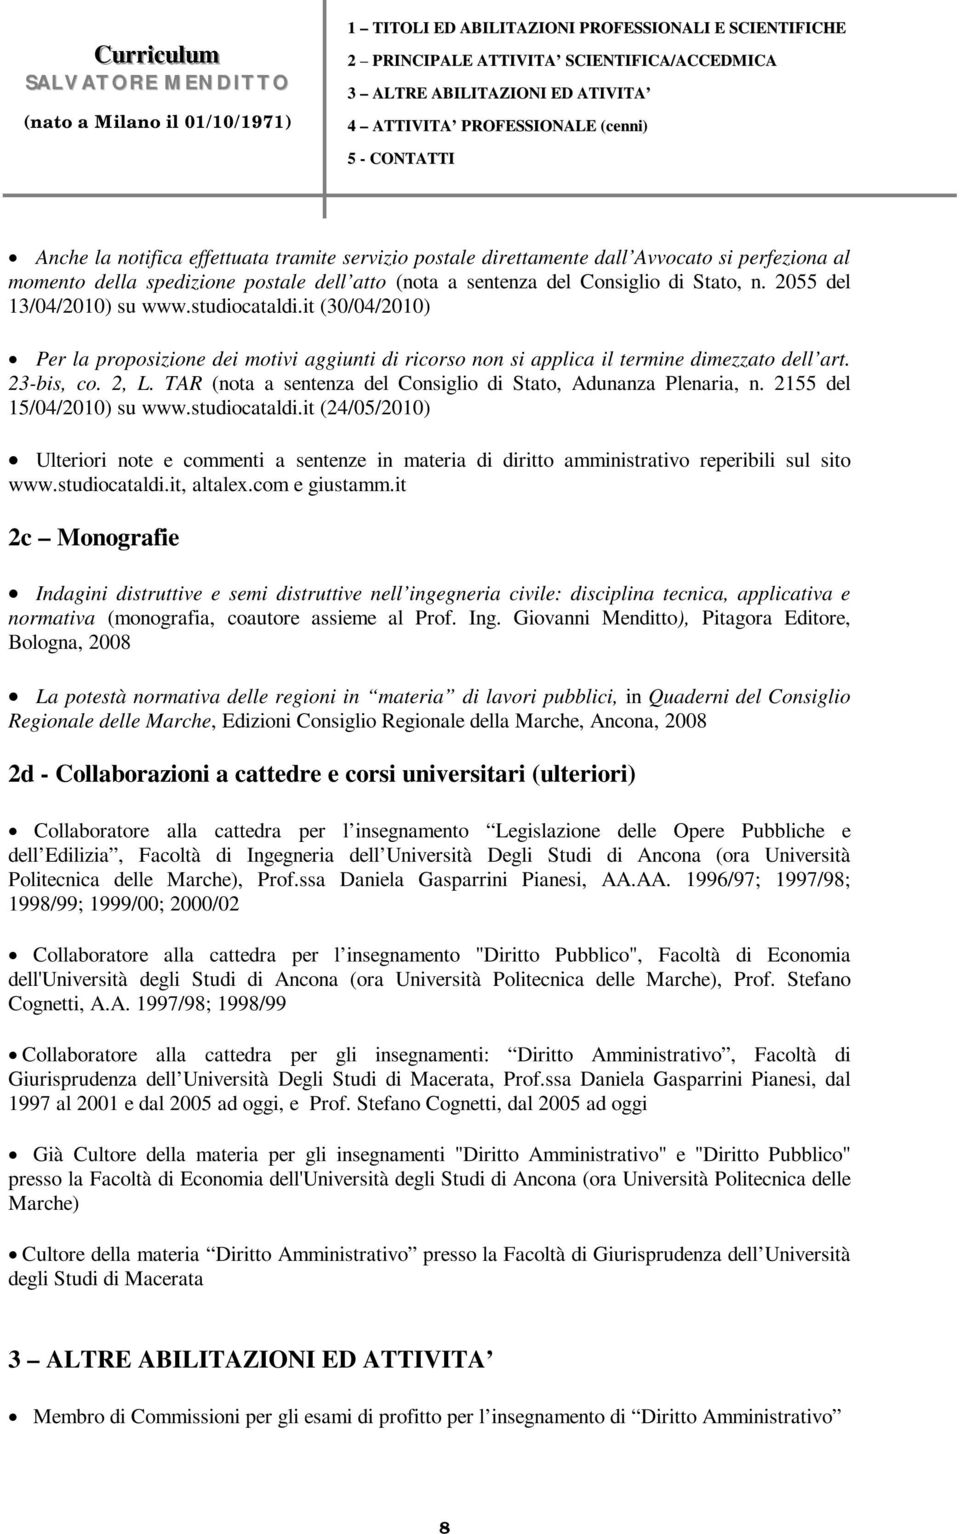 TAR (nota a sentenza del Consiglio di Stato, Adunanza Plenaria, n. 2155 del 15/04/2010) su www.studiocataldi.